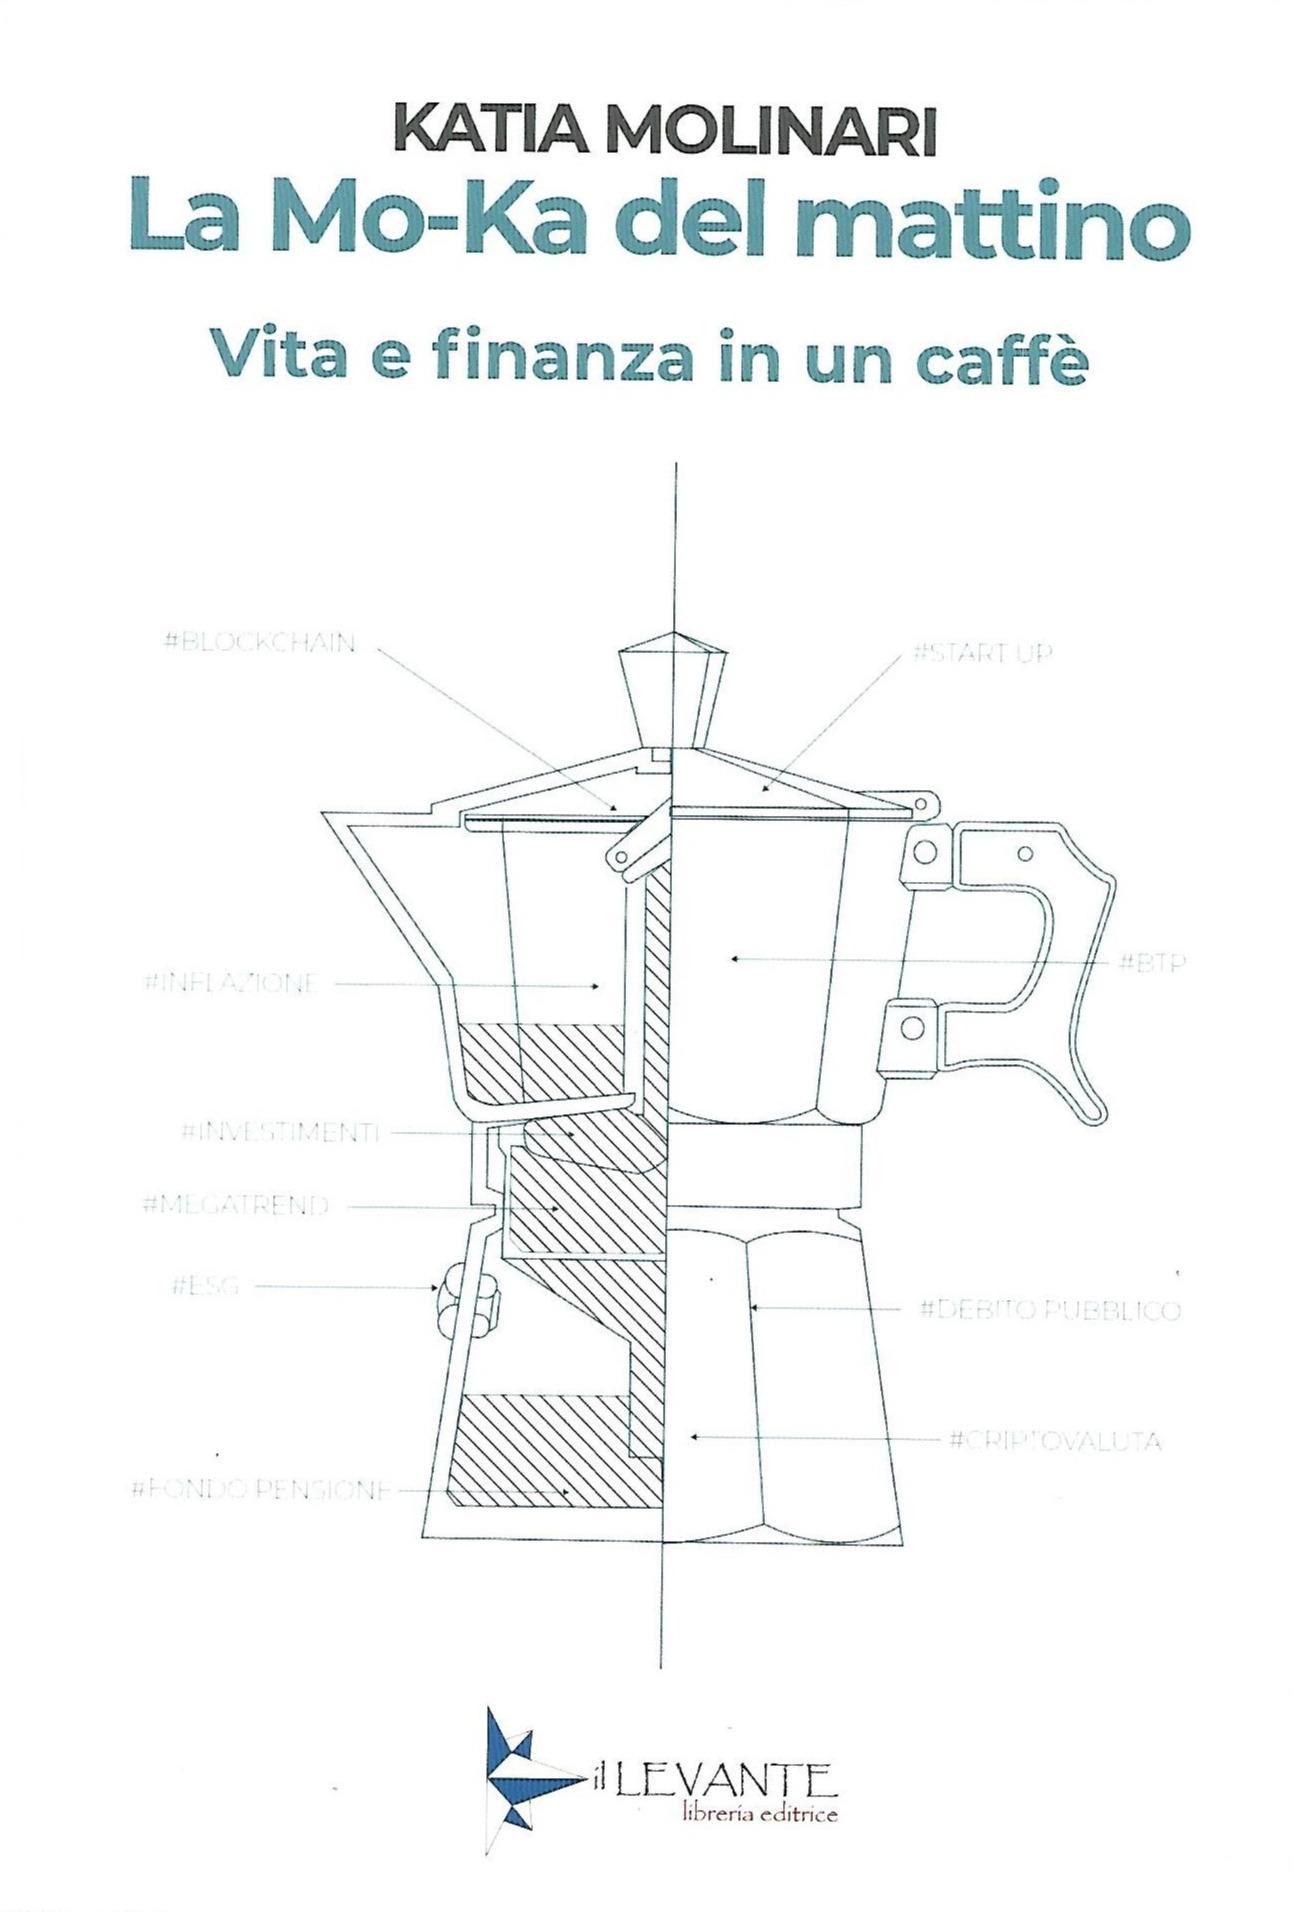 La Mo-Ka del mattino - Vita e finanza in un caffè